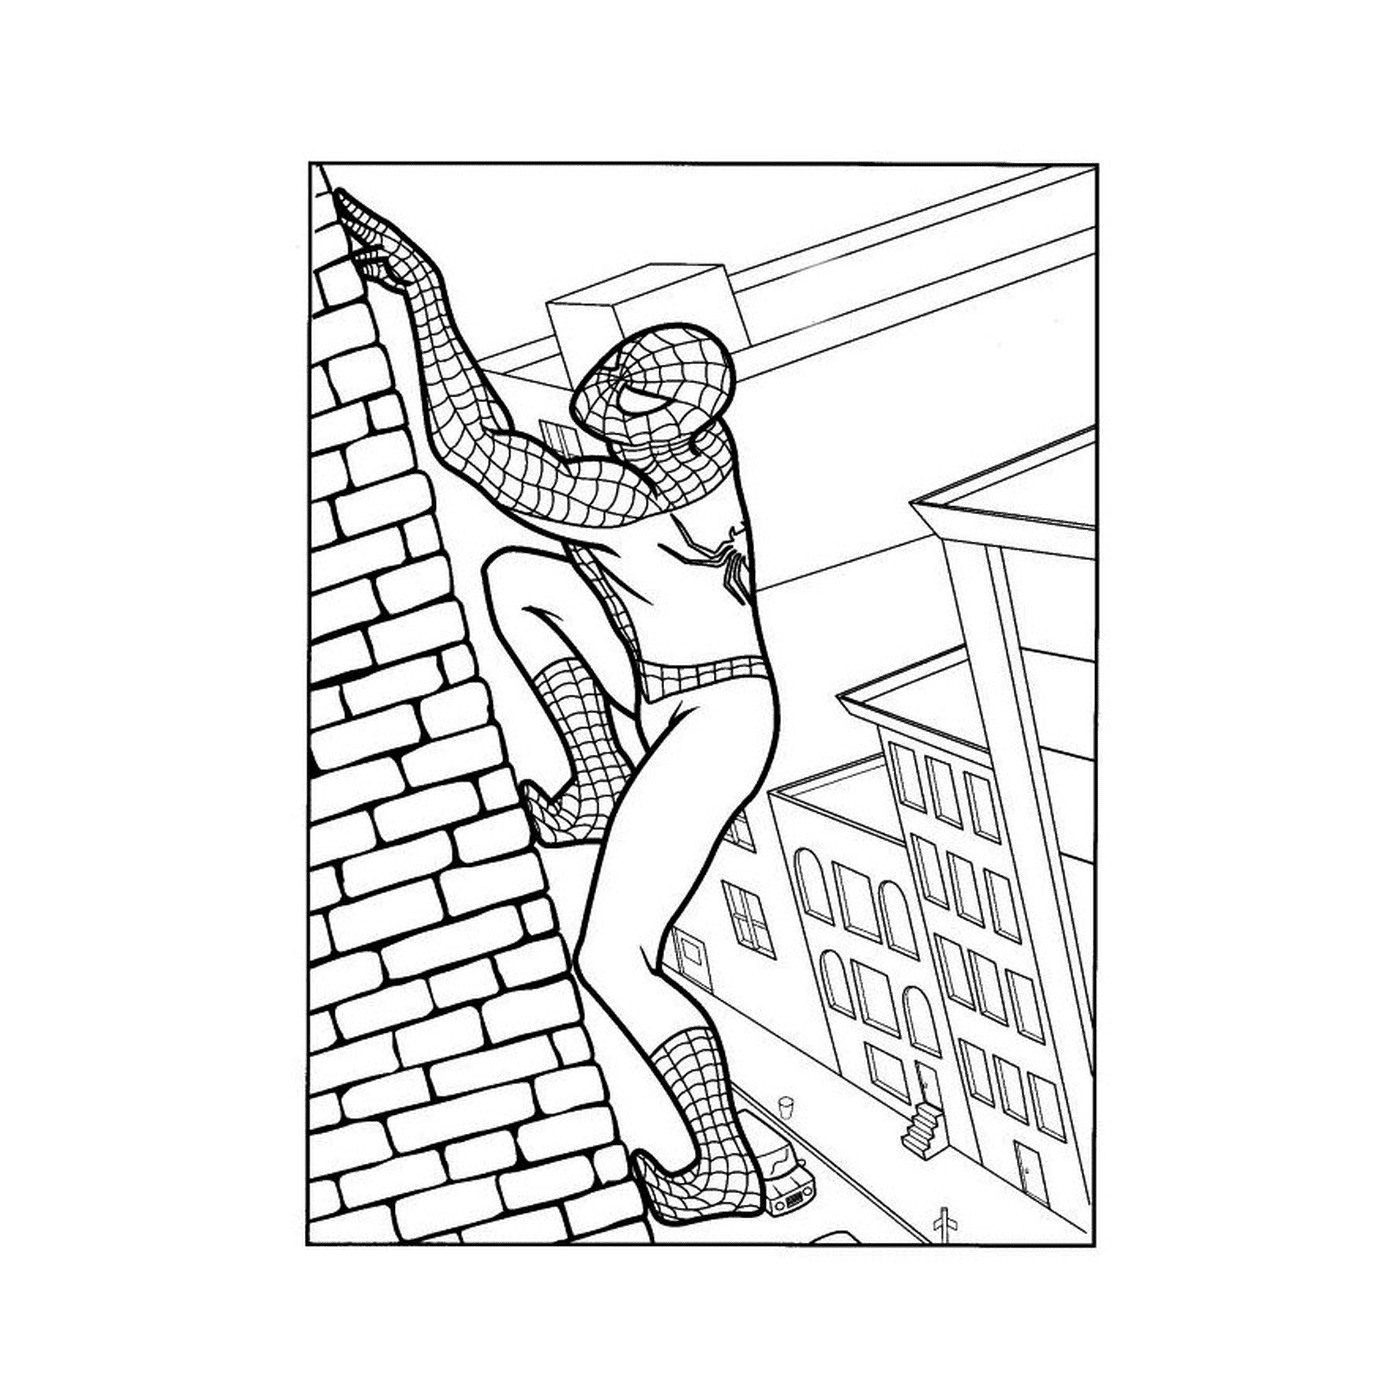  Spiderman klettert auf eine Wand 